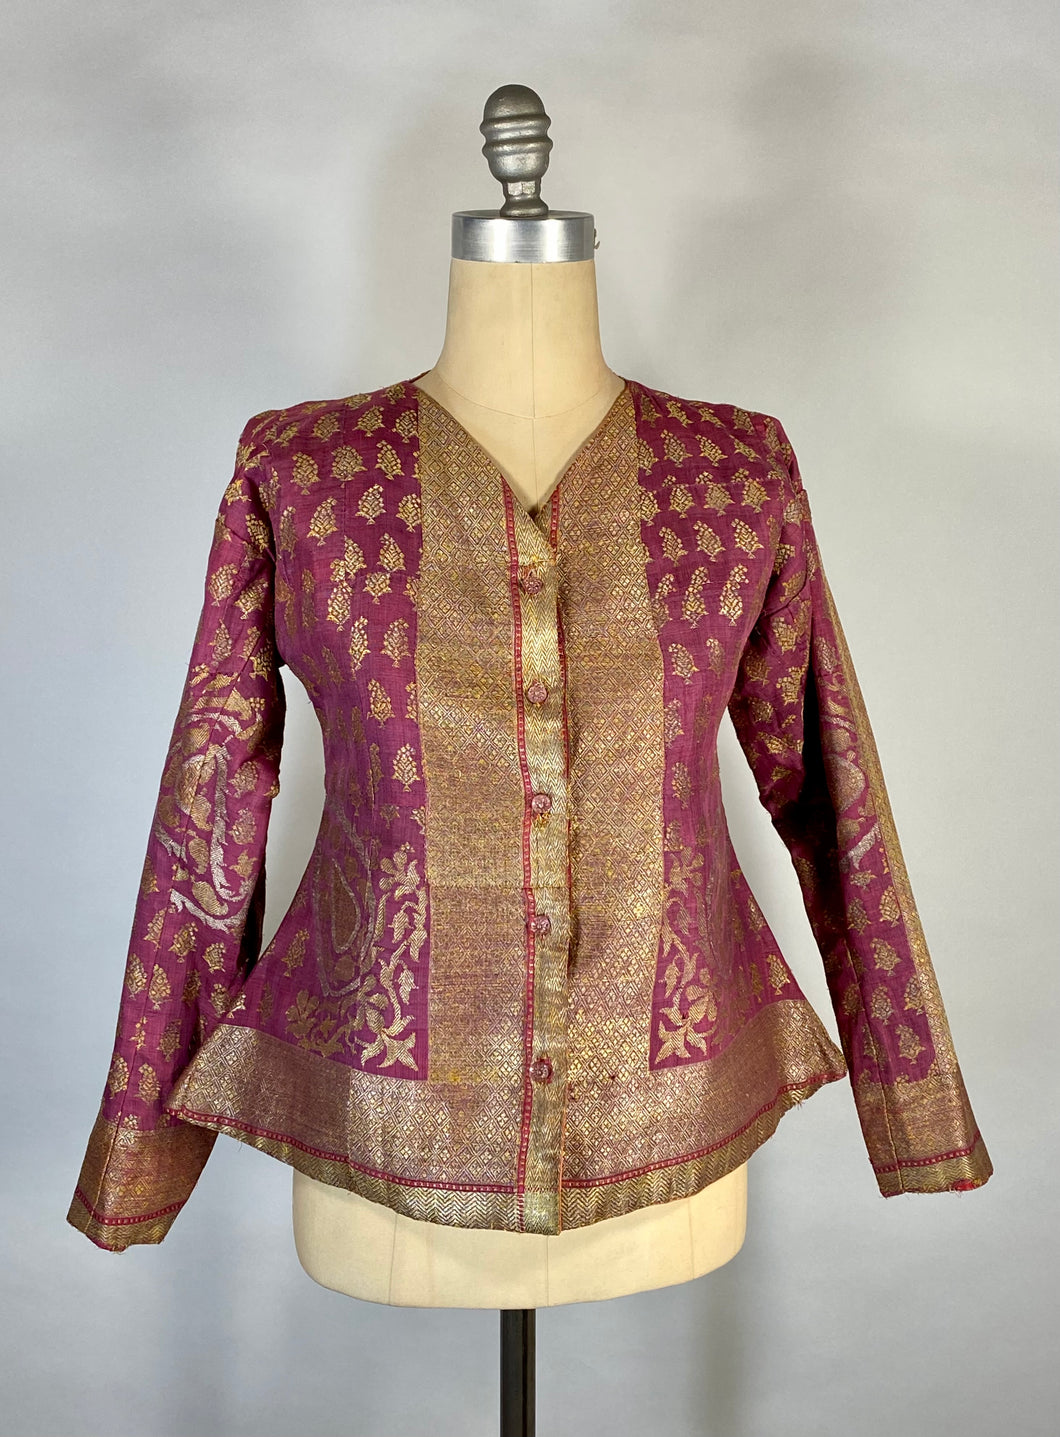 ASIAN ROYALTY vintage/antique real metal metallic brocade woven silk fuchsia top